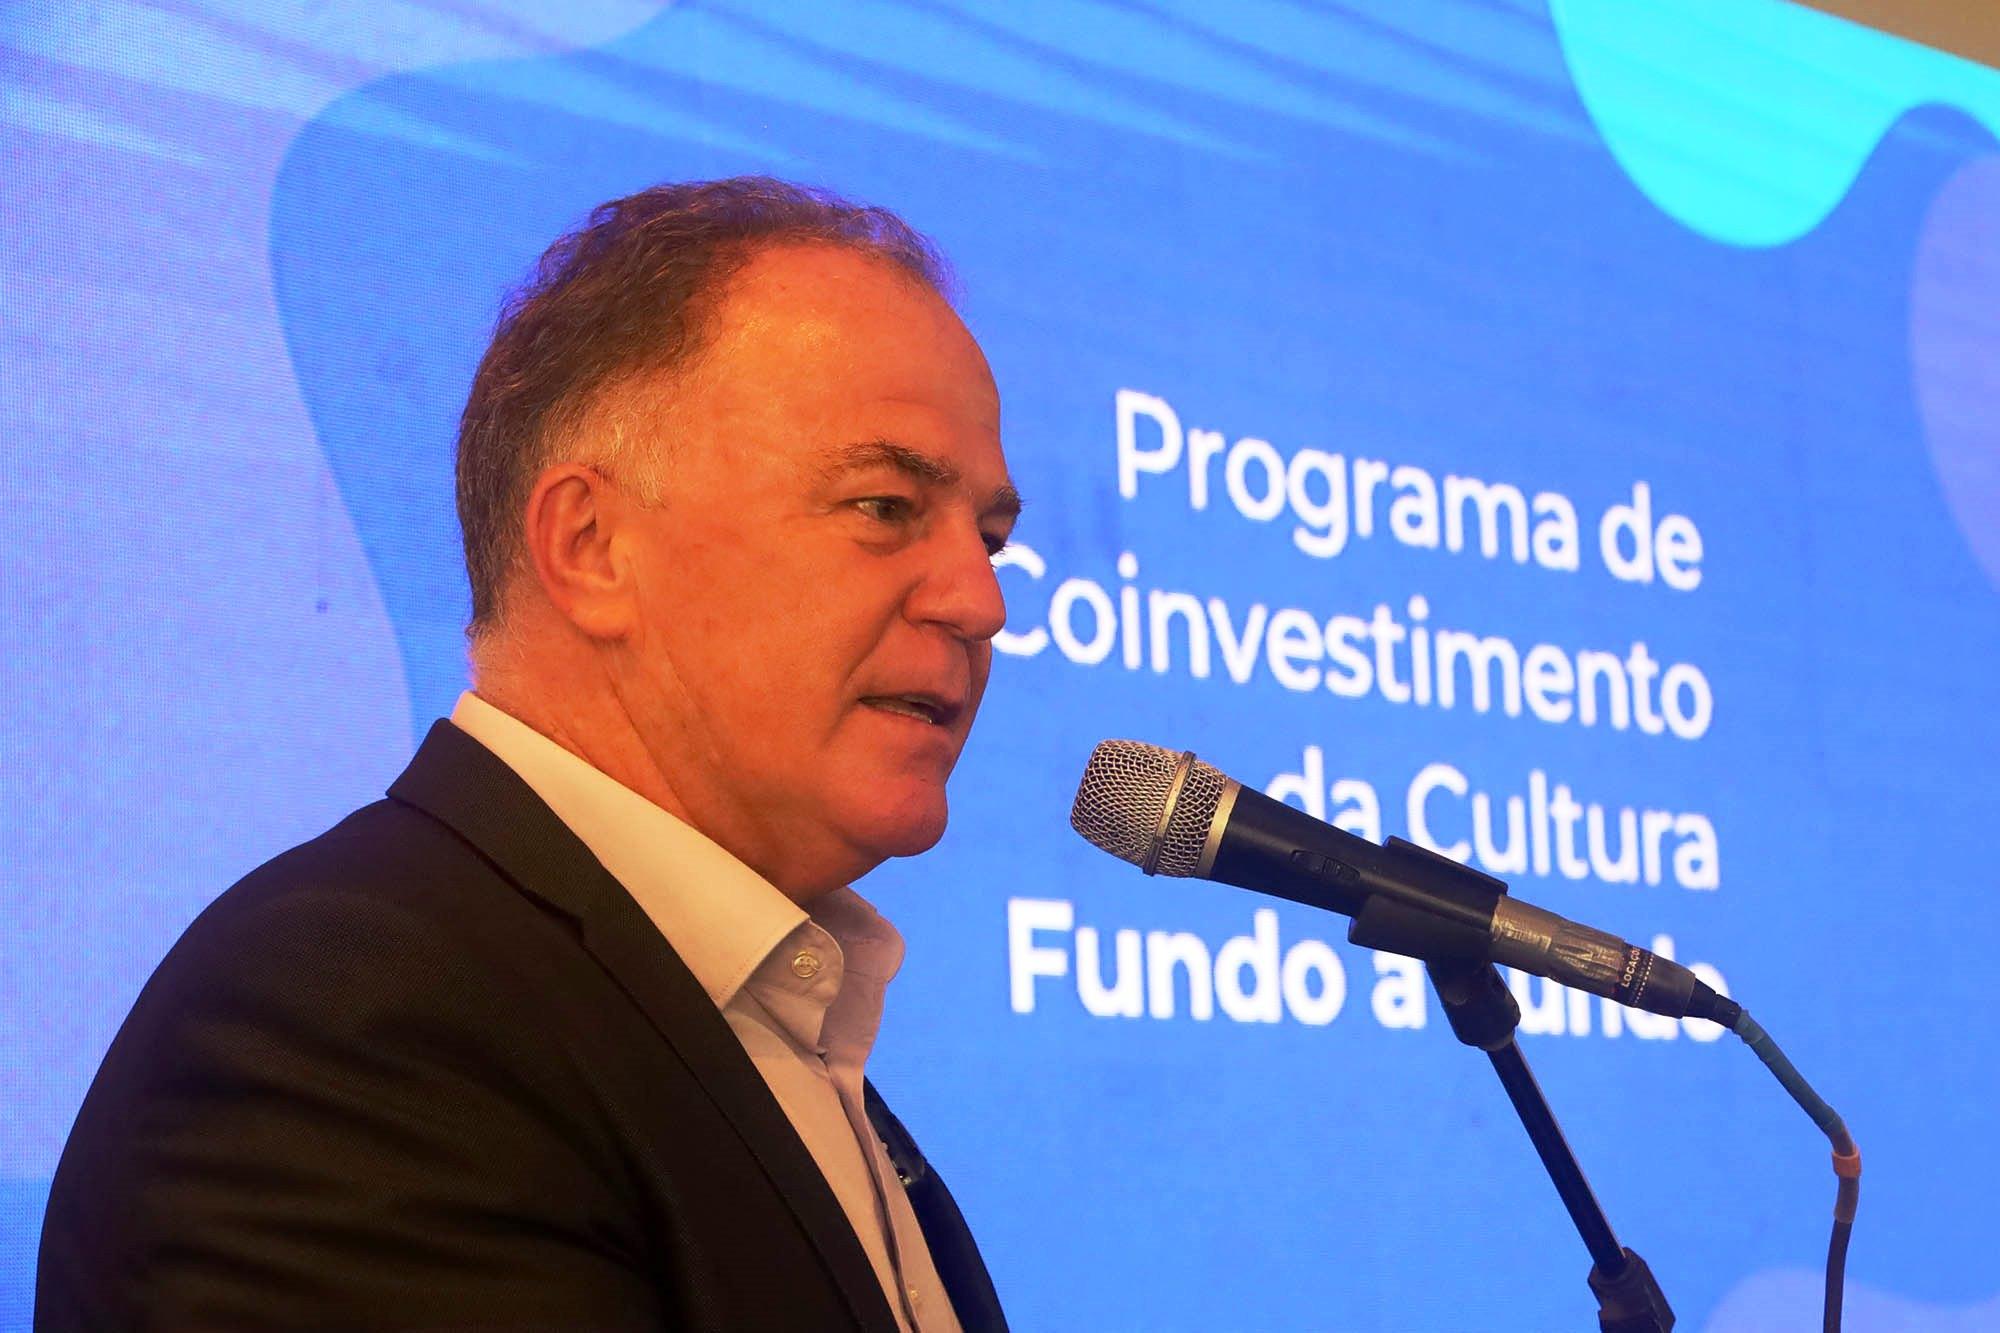 Governador do ES anuncia R$ 30 milhões para linha de financiamento do programa de Coinvestimento da Cultura